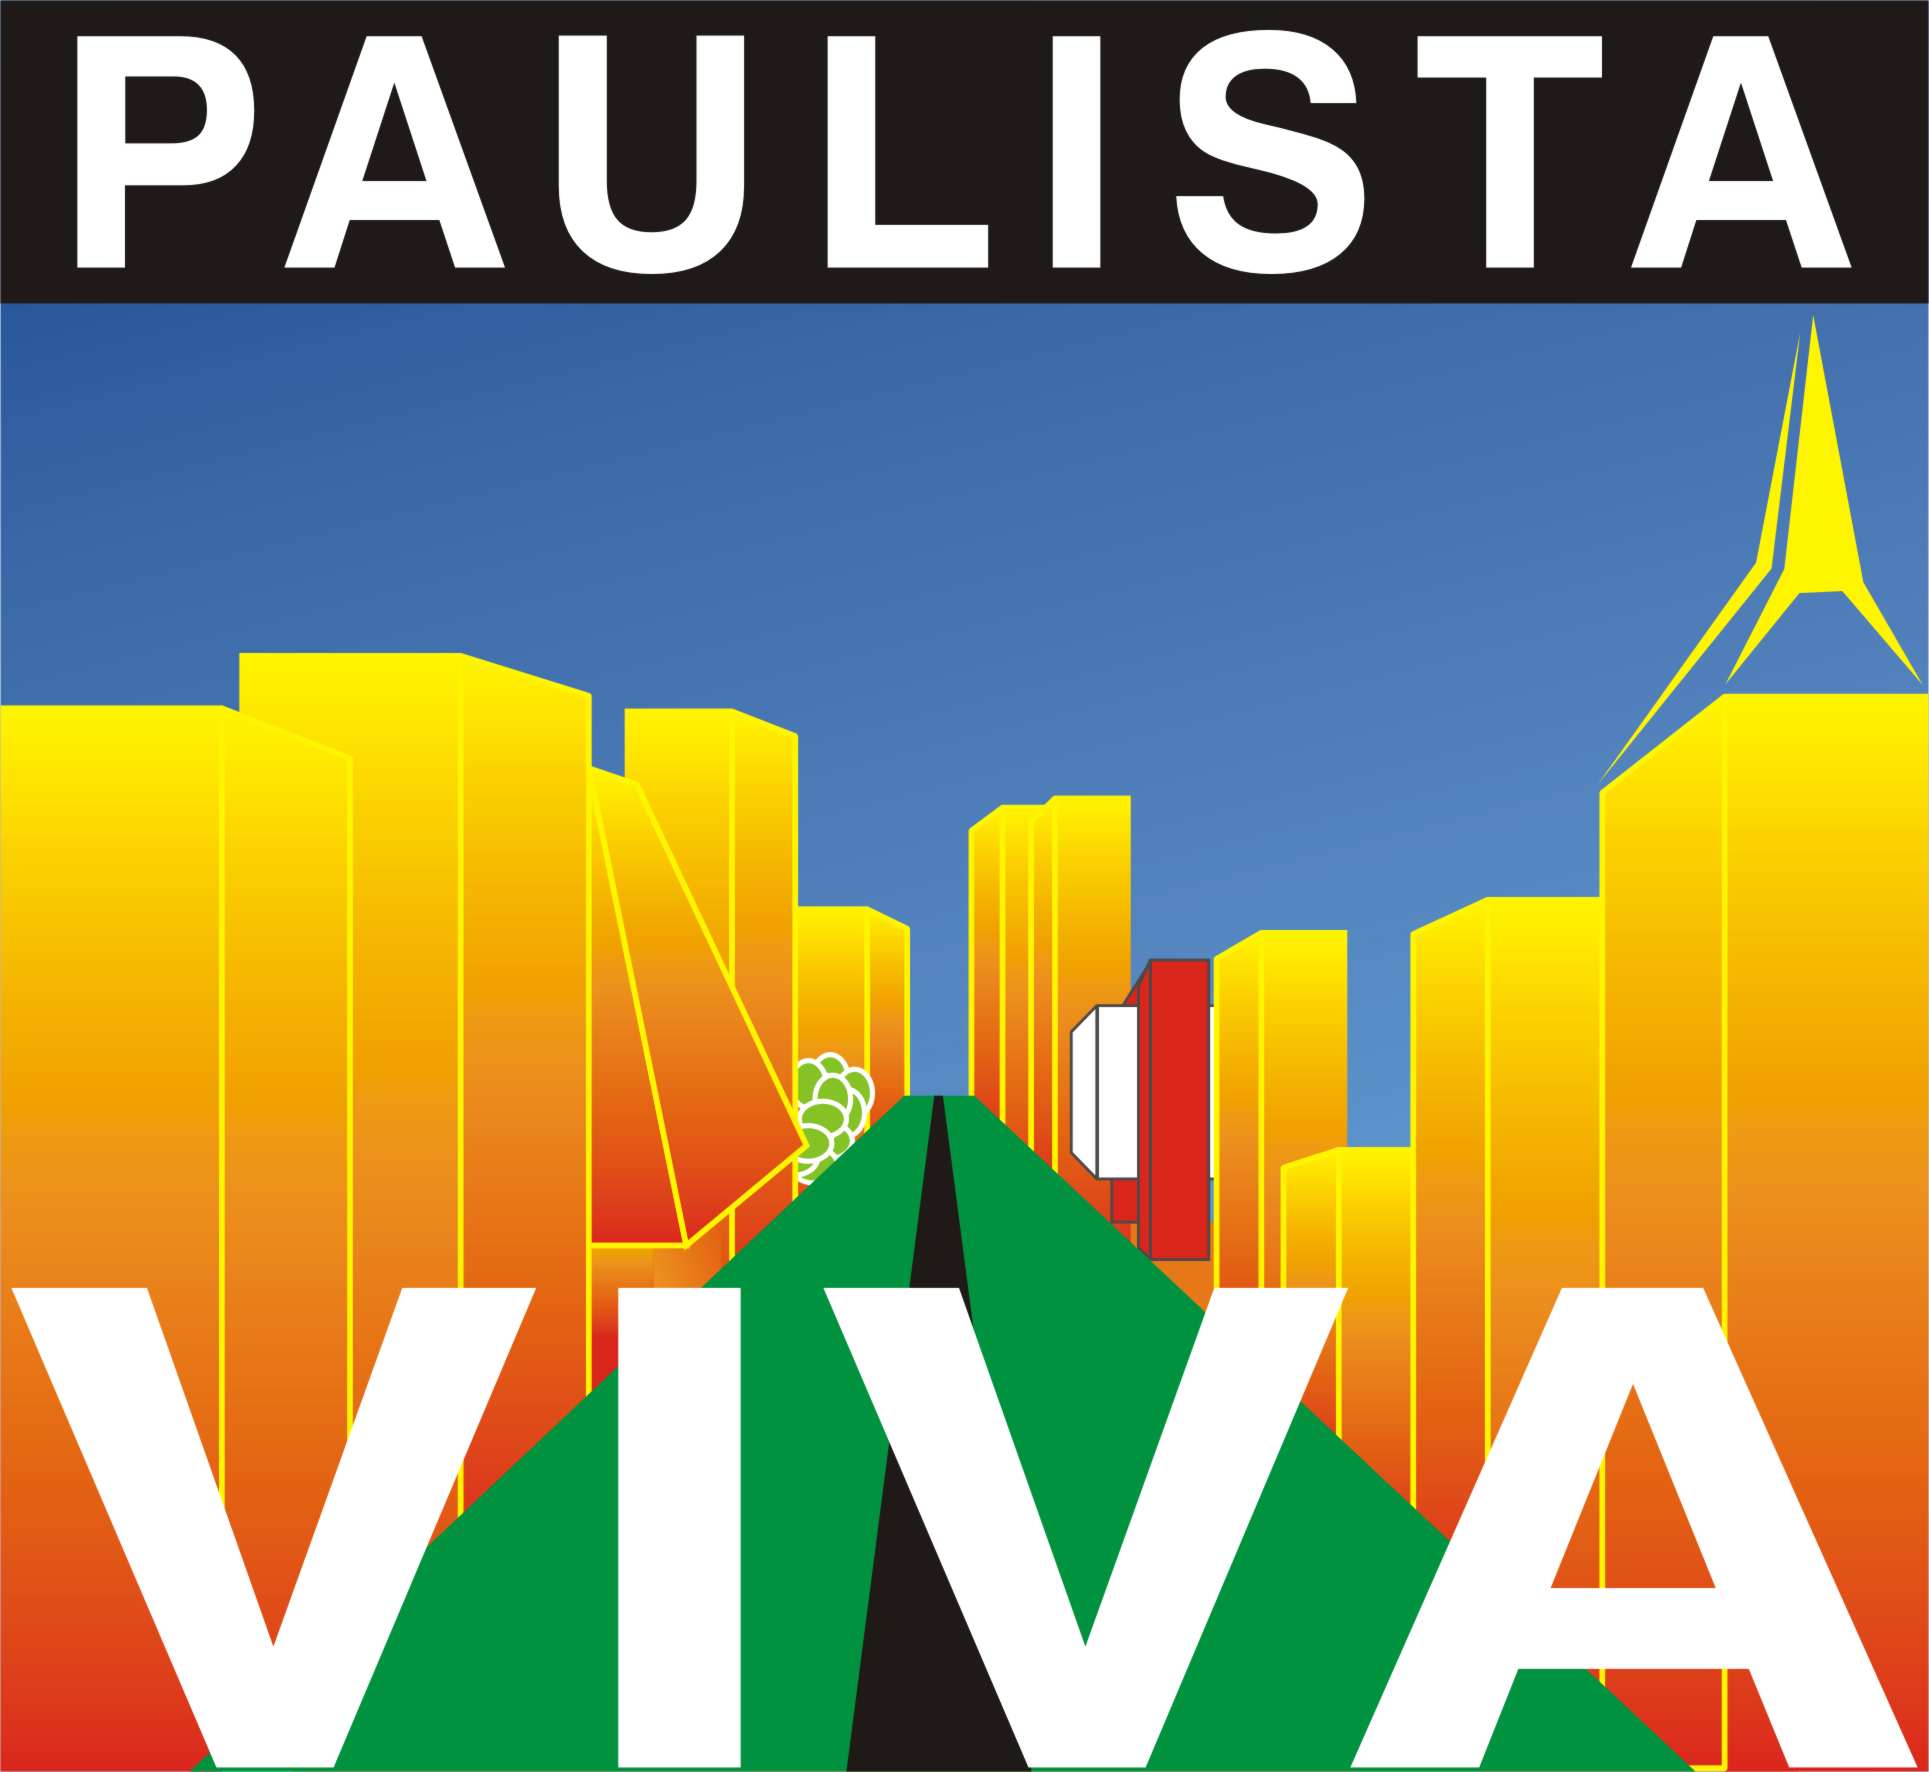 logo paulista viva - Serie Avenida Paulista: 125 anos e 1 mês da avenida símbolo de São Paulo